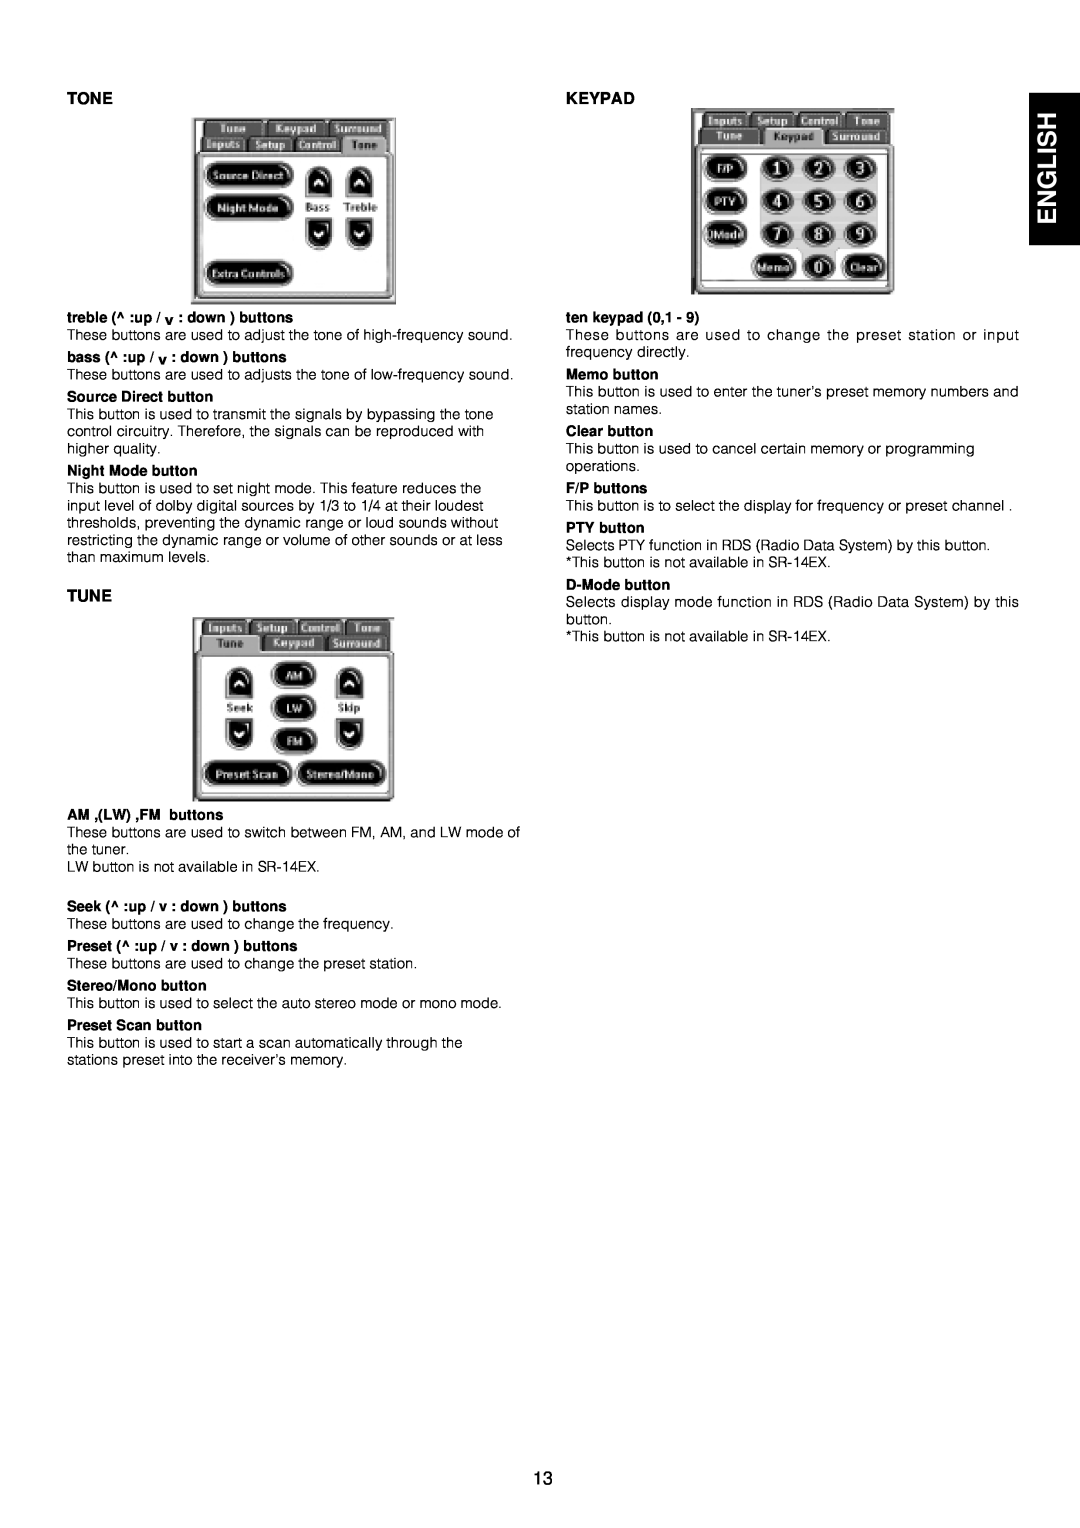 Marantz SR-14EX manual English, Tone, Keypad, Tune 